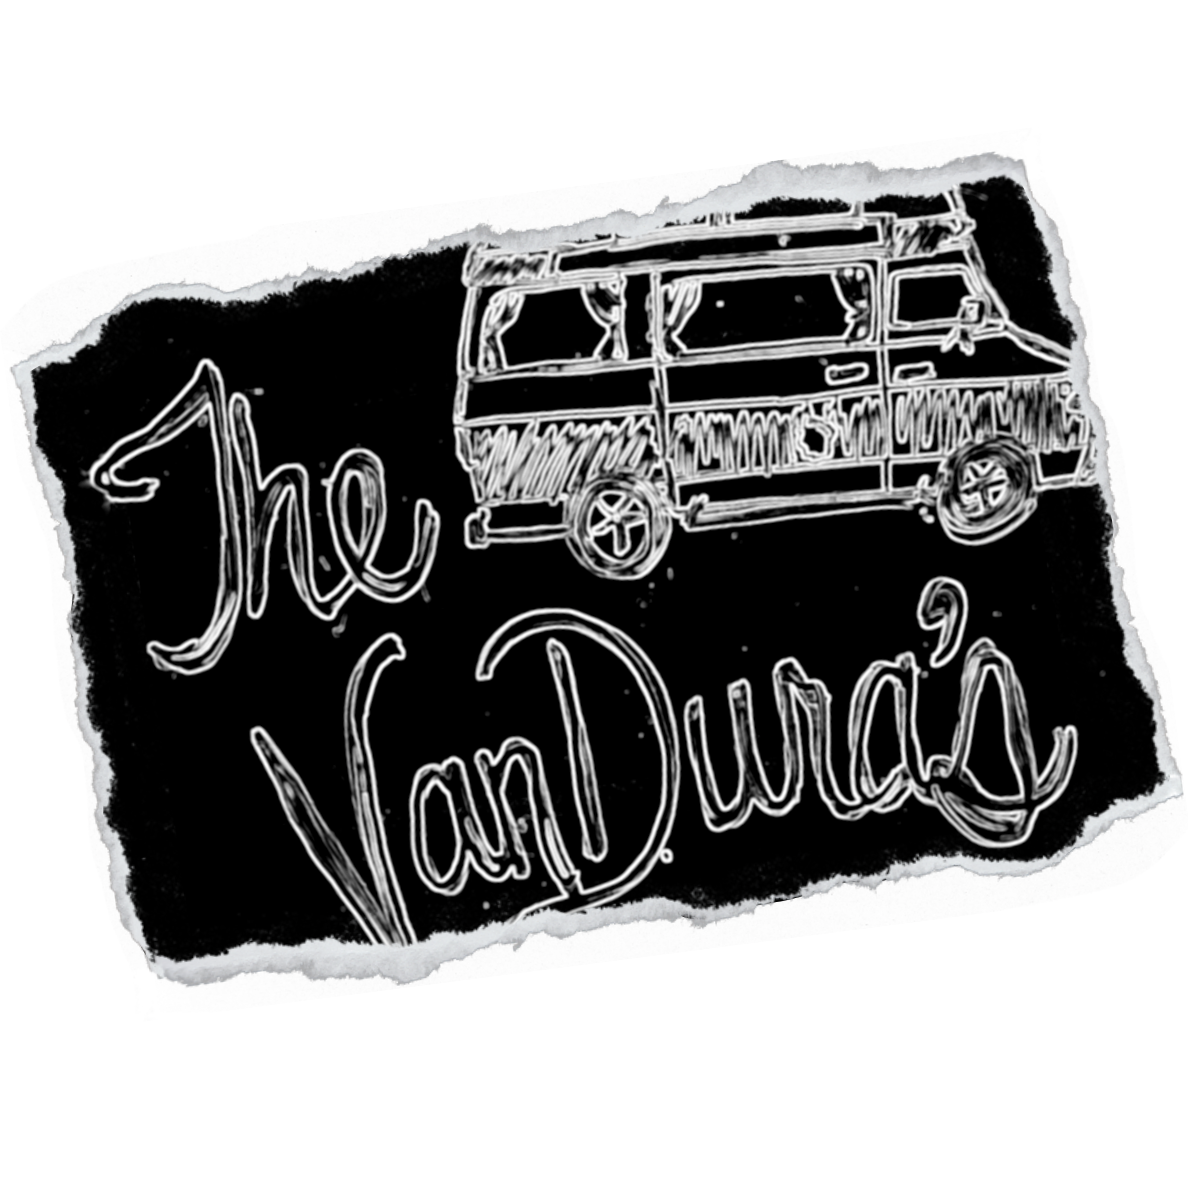 VanDura's logo